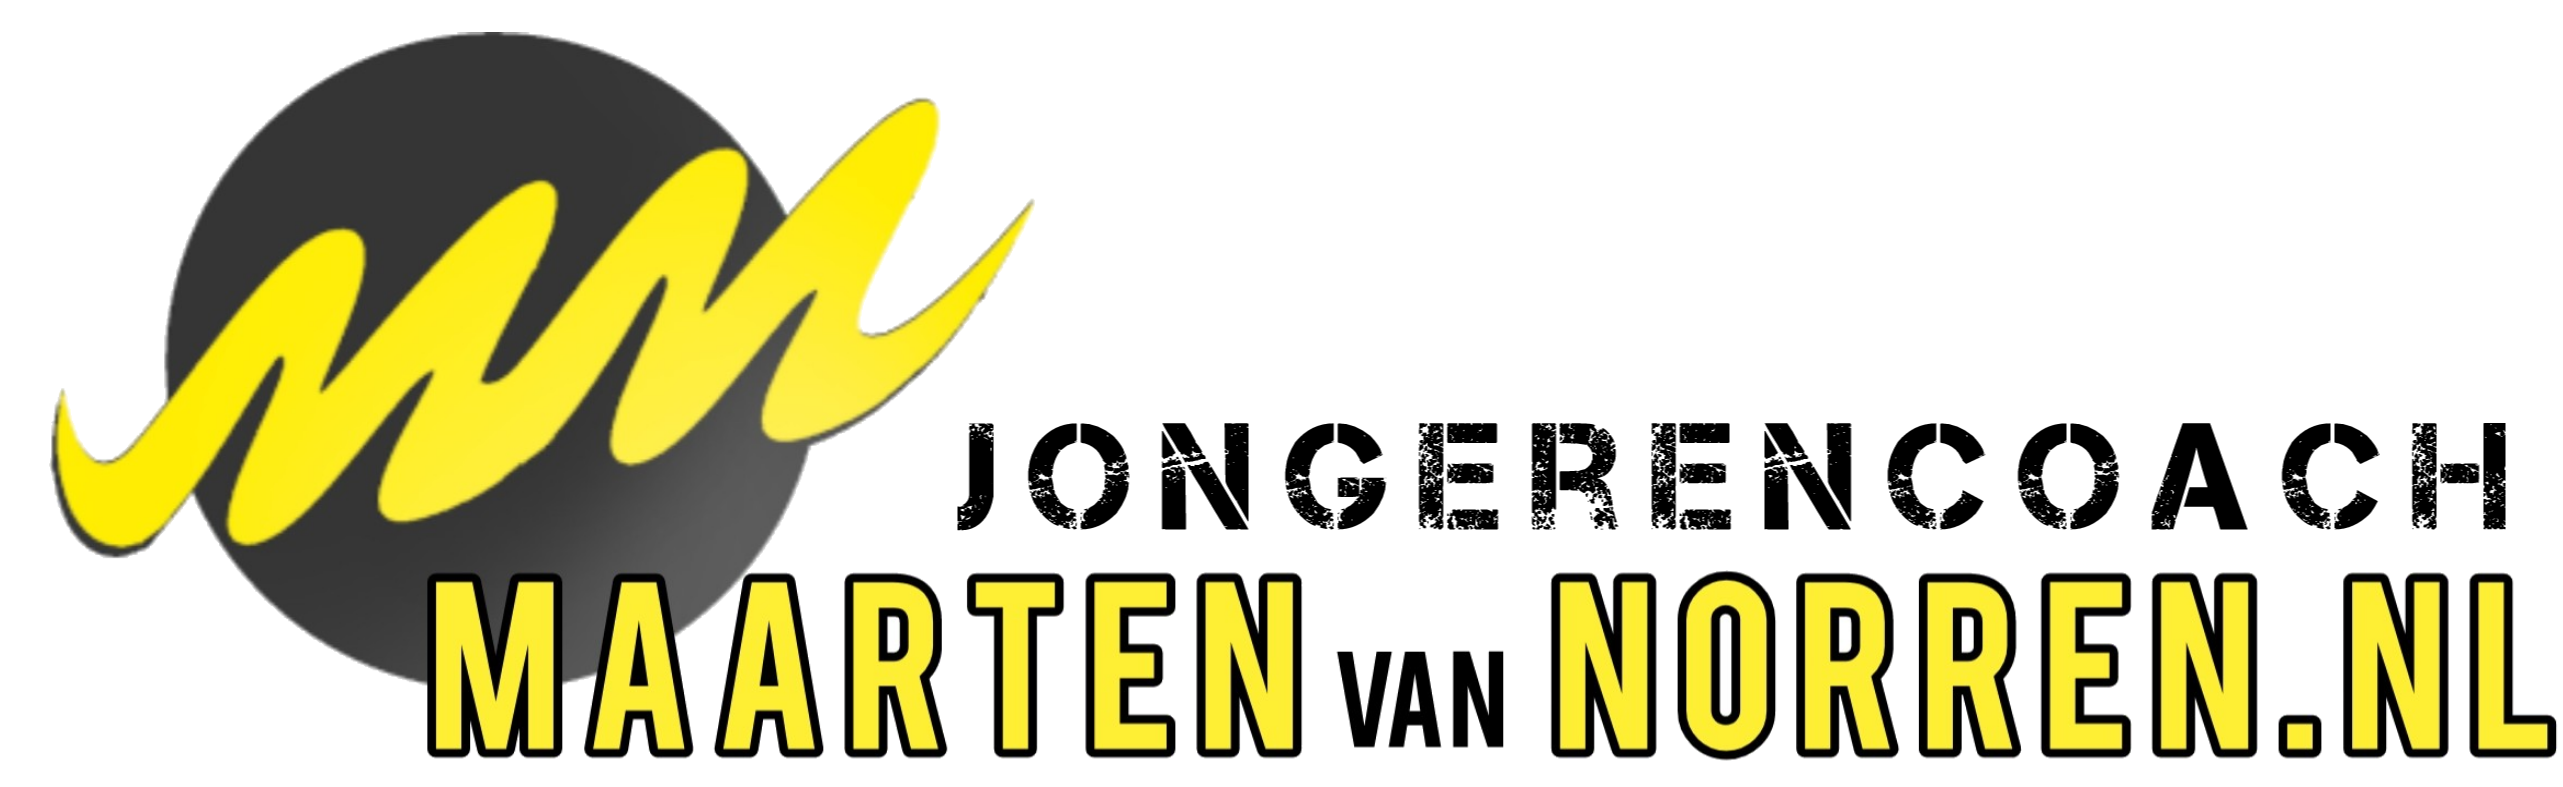 Maarten van Norren - De Jongerencoach